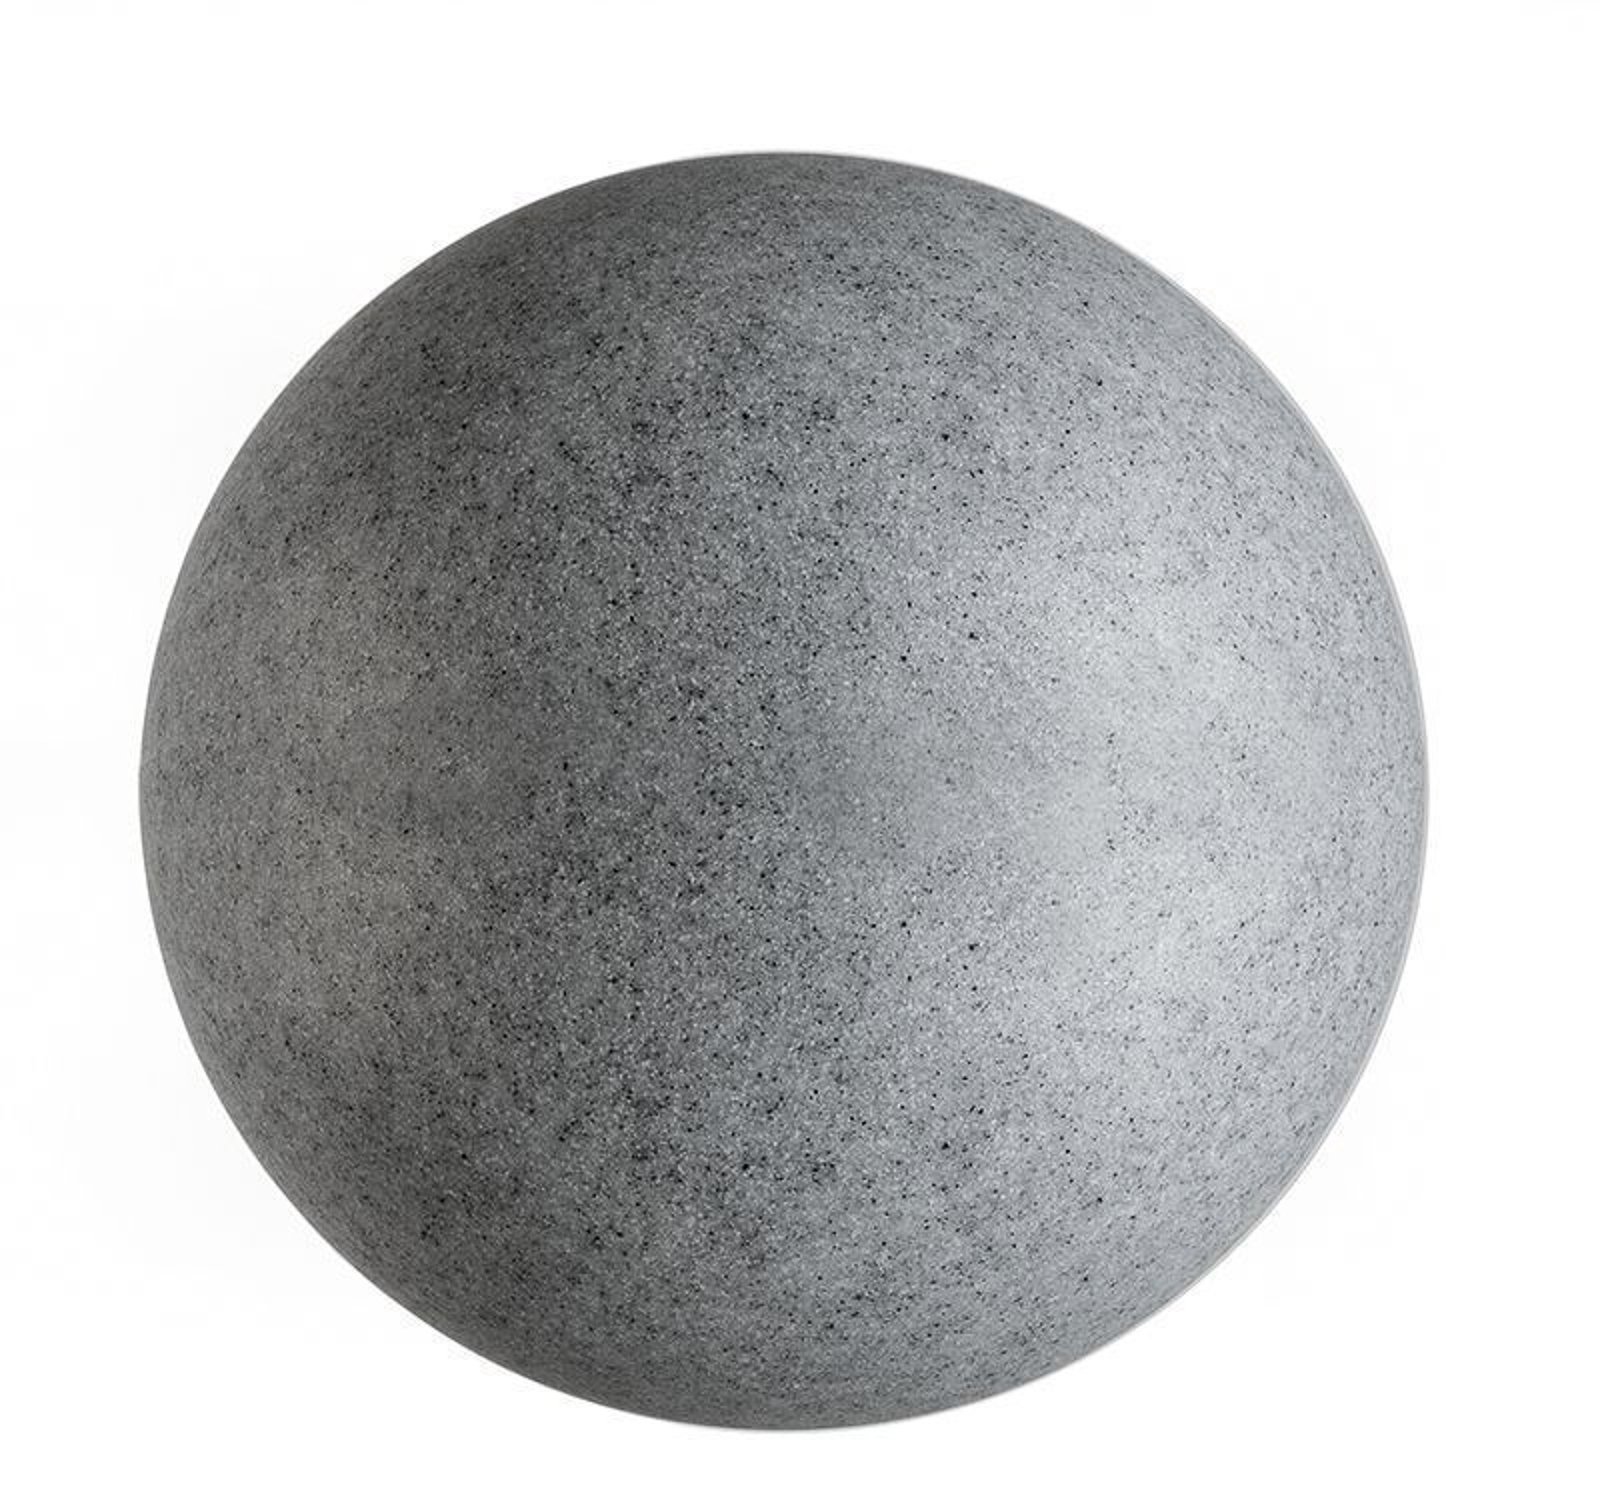 Lichtbol met grondspies, graniet, Ø 45cm